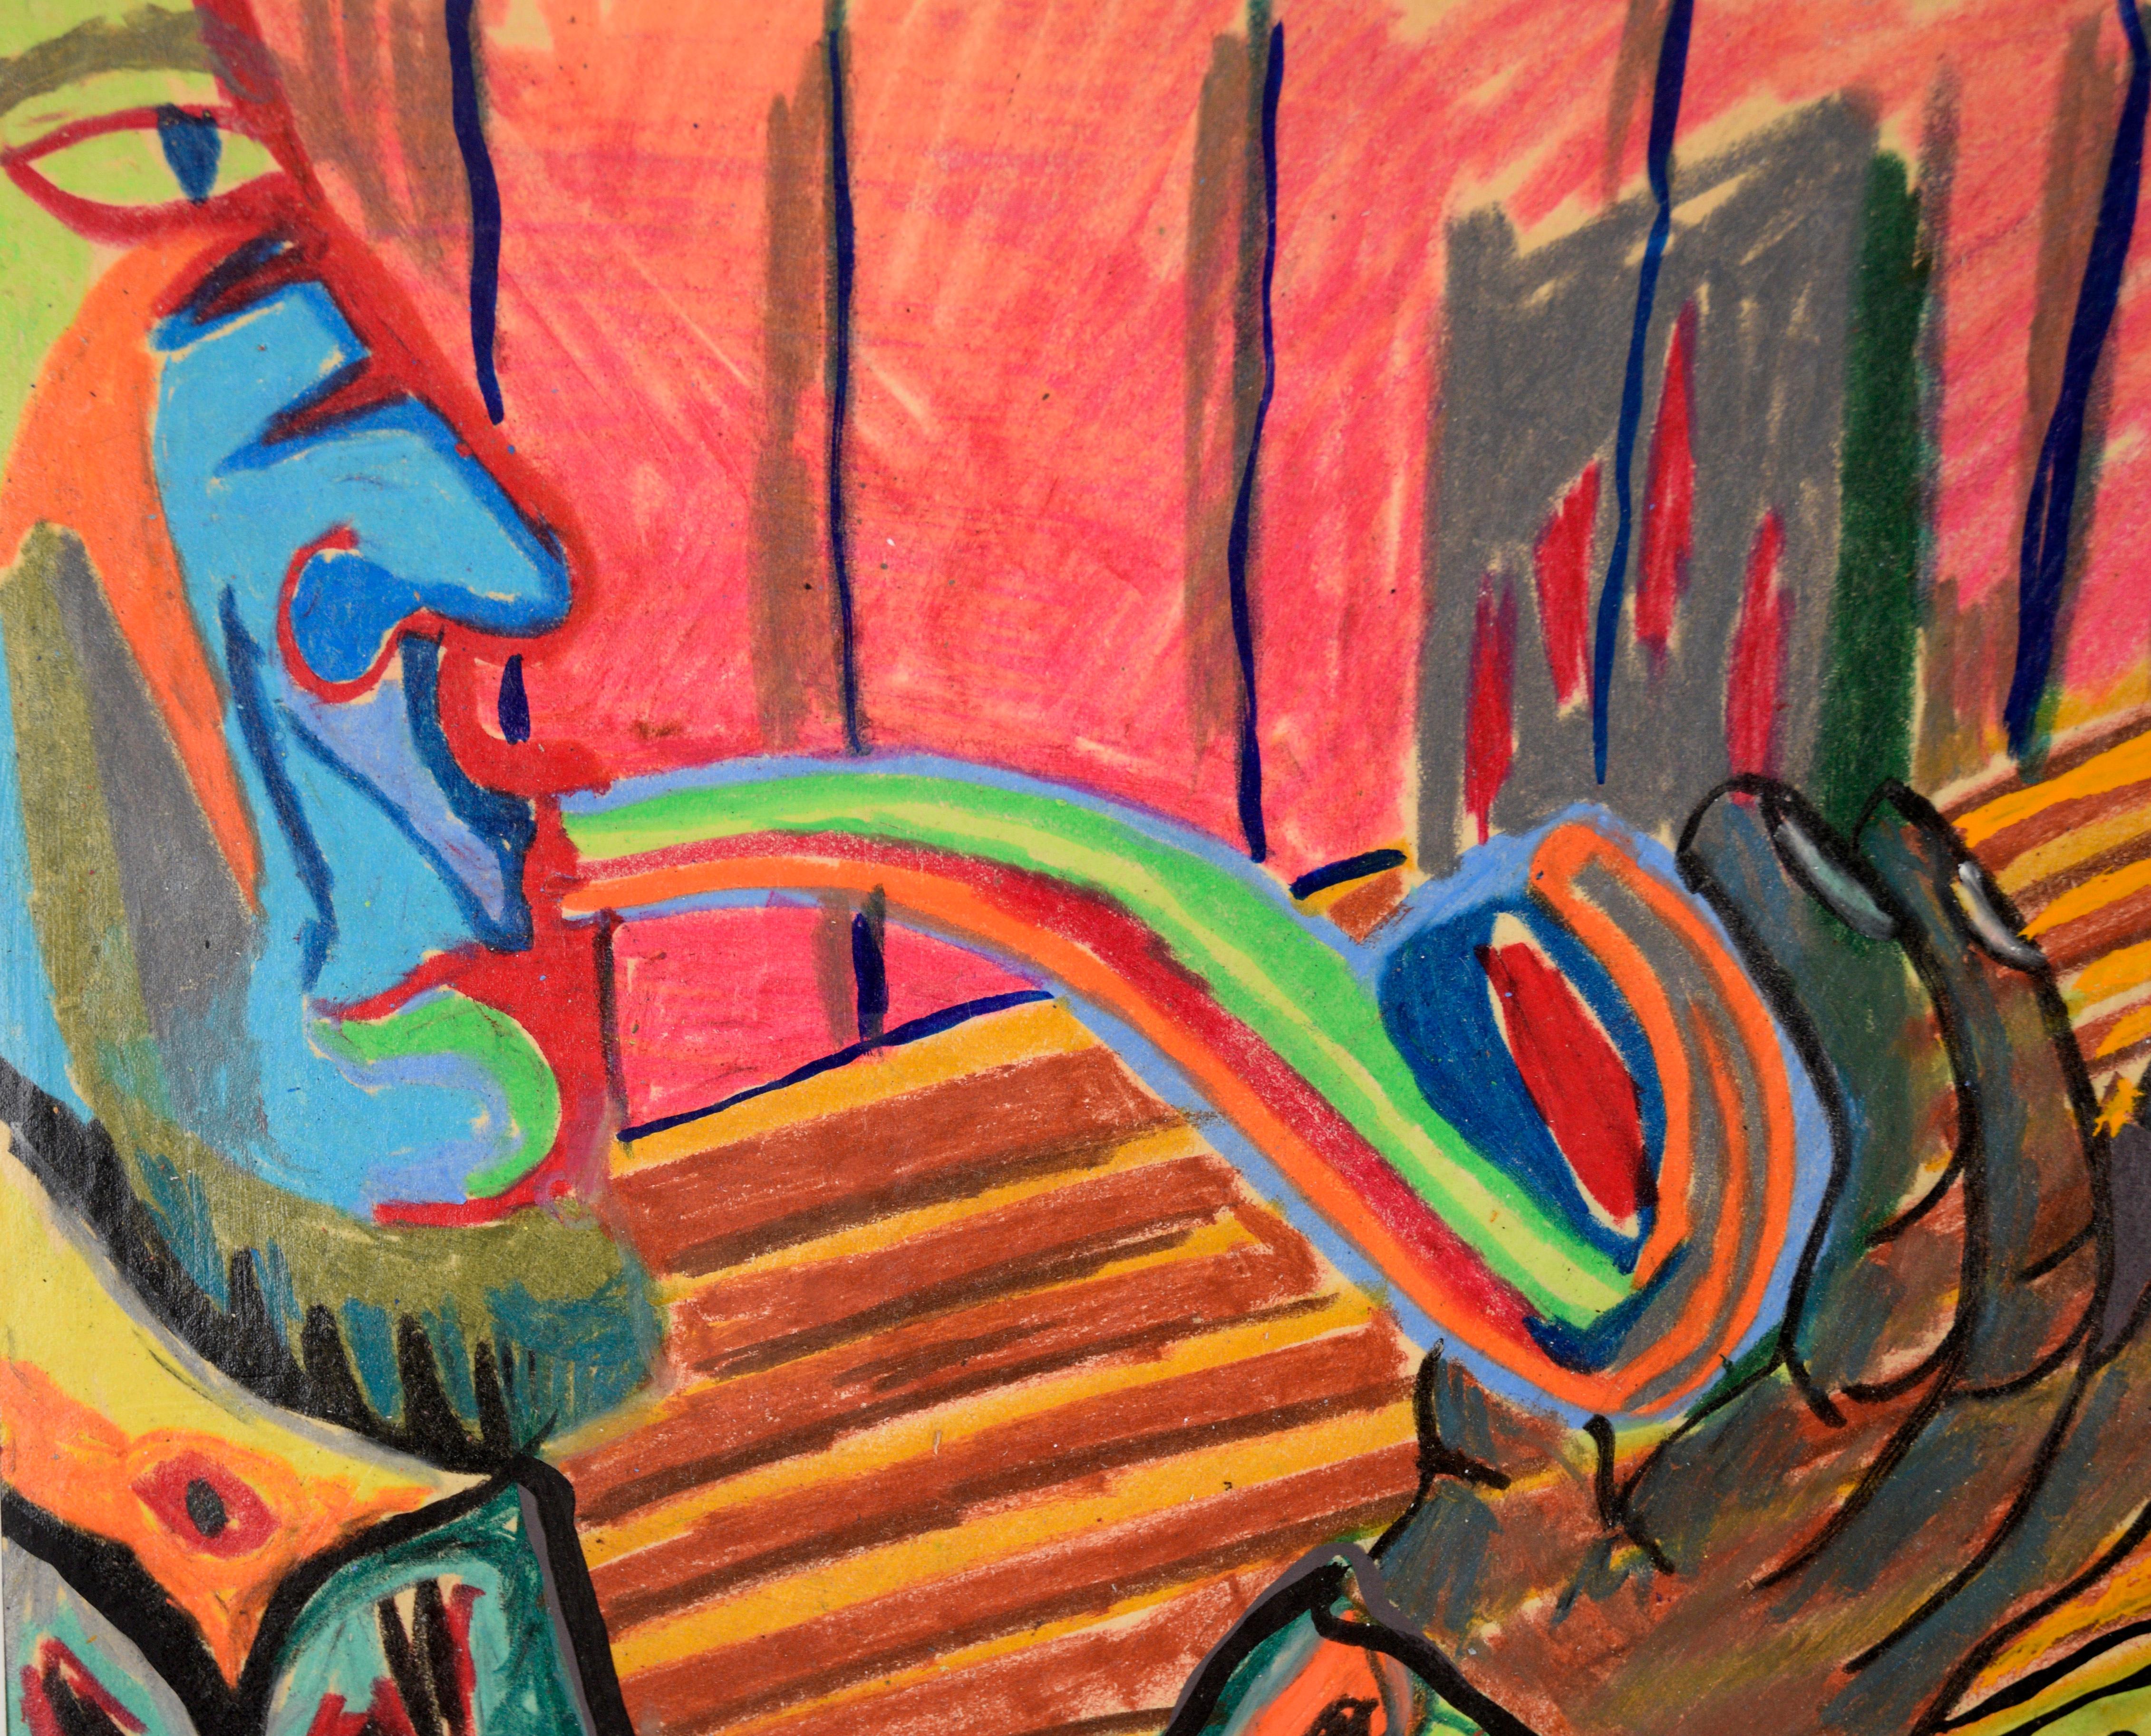 La pipe arc-en-ciel - Portrait et intérieur fauves au pastel sur papier

Portrait abstrait aux couleurs vives de Michael William Eggleston (américain, 20e siècle). Un personnage au visage bleu, sur le côté gauche de la composition, fume une grande